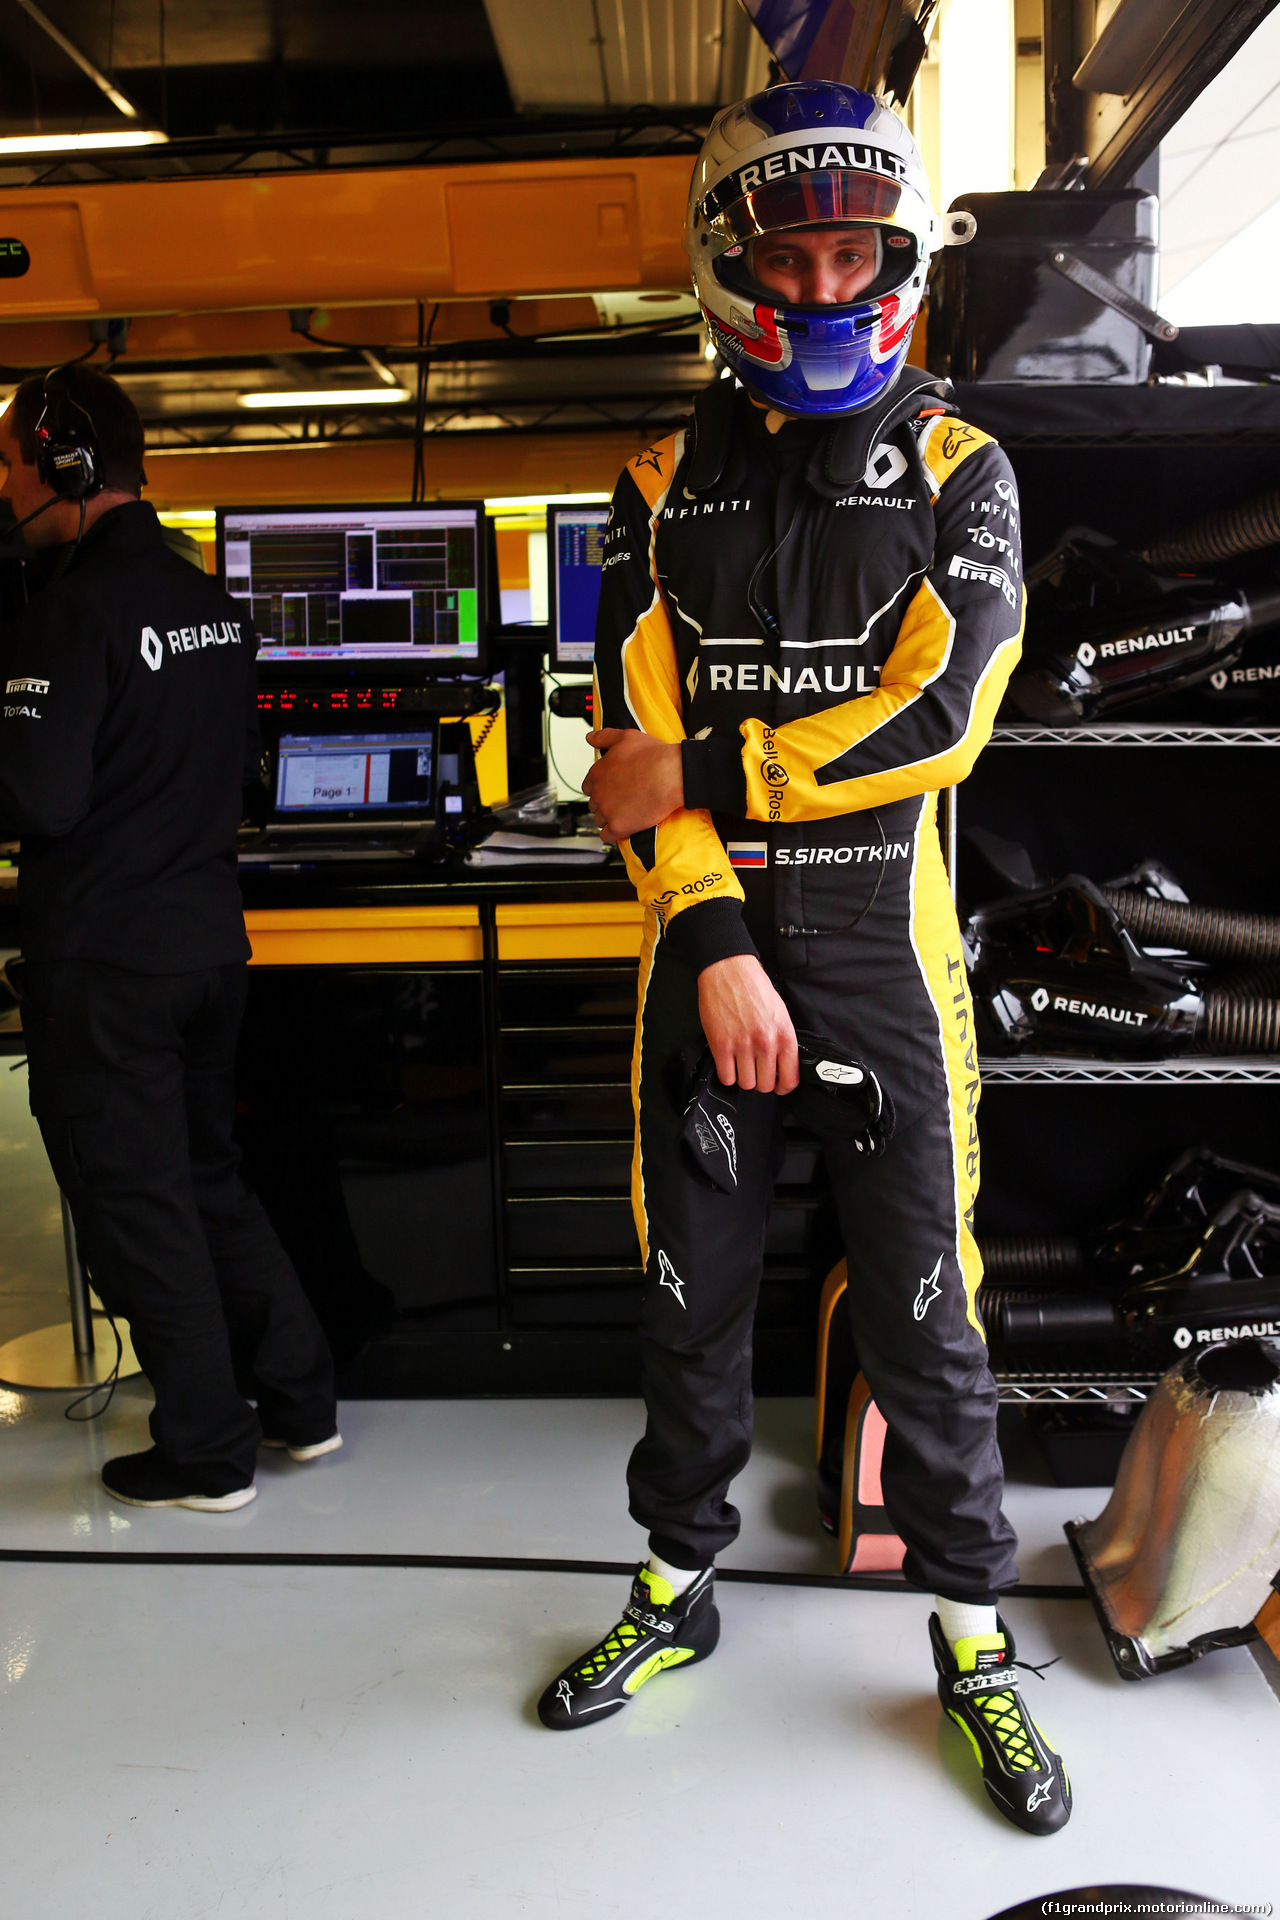 TEST F1 SILVERSTONE 12 LUGLIO, Sergey Sirotkin (RUS) Renault Sport F1 Team Test Driver.
12.07.2016.